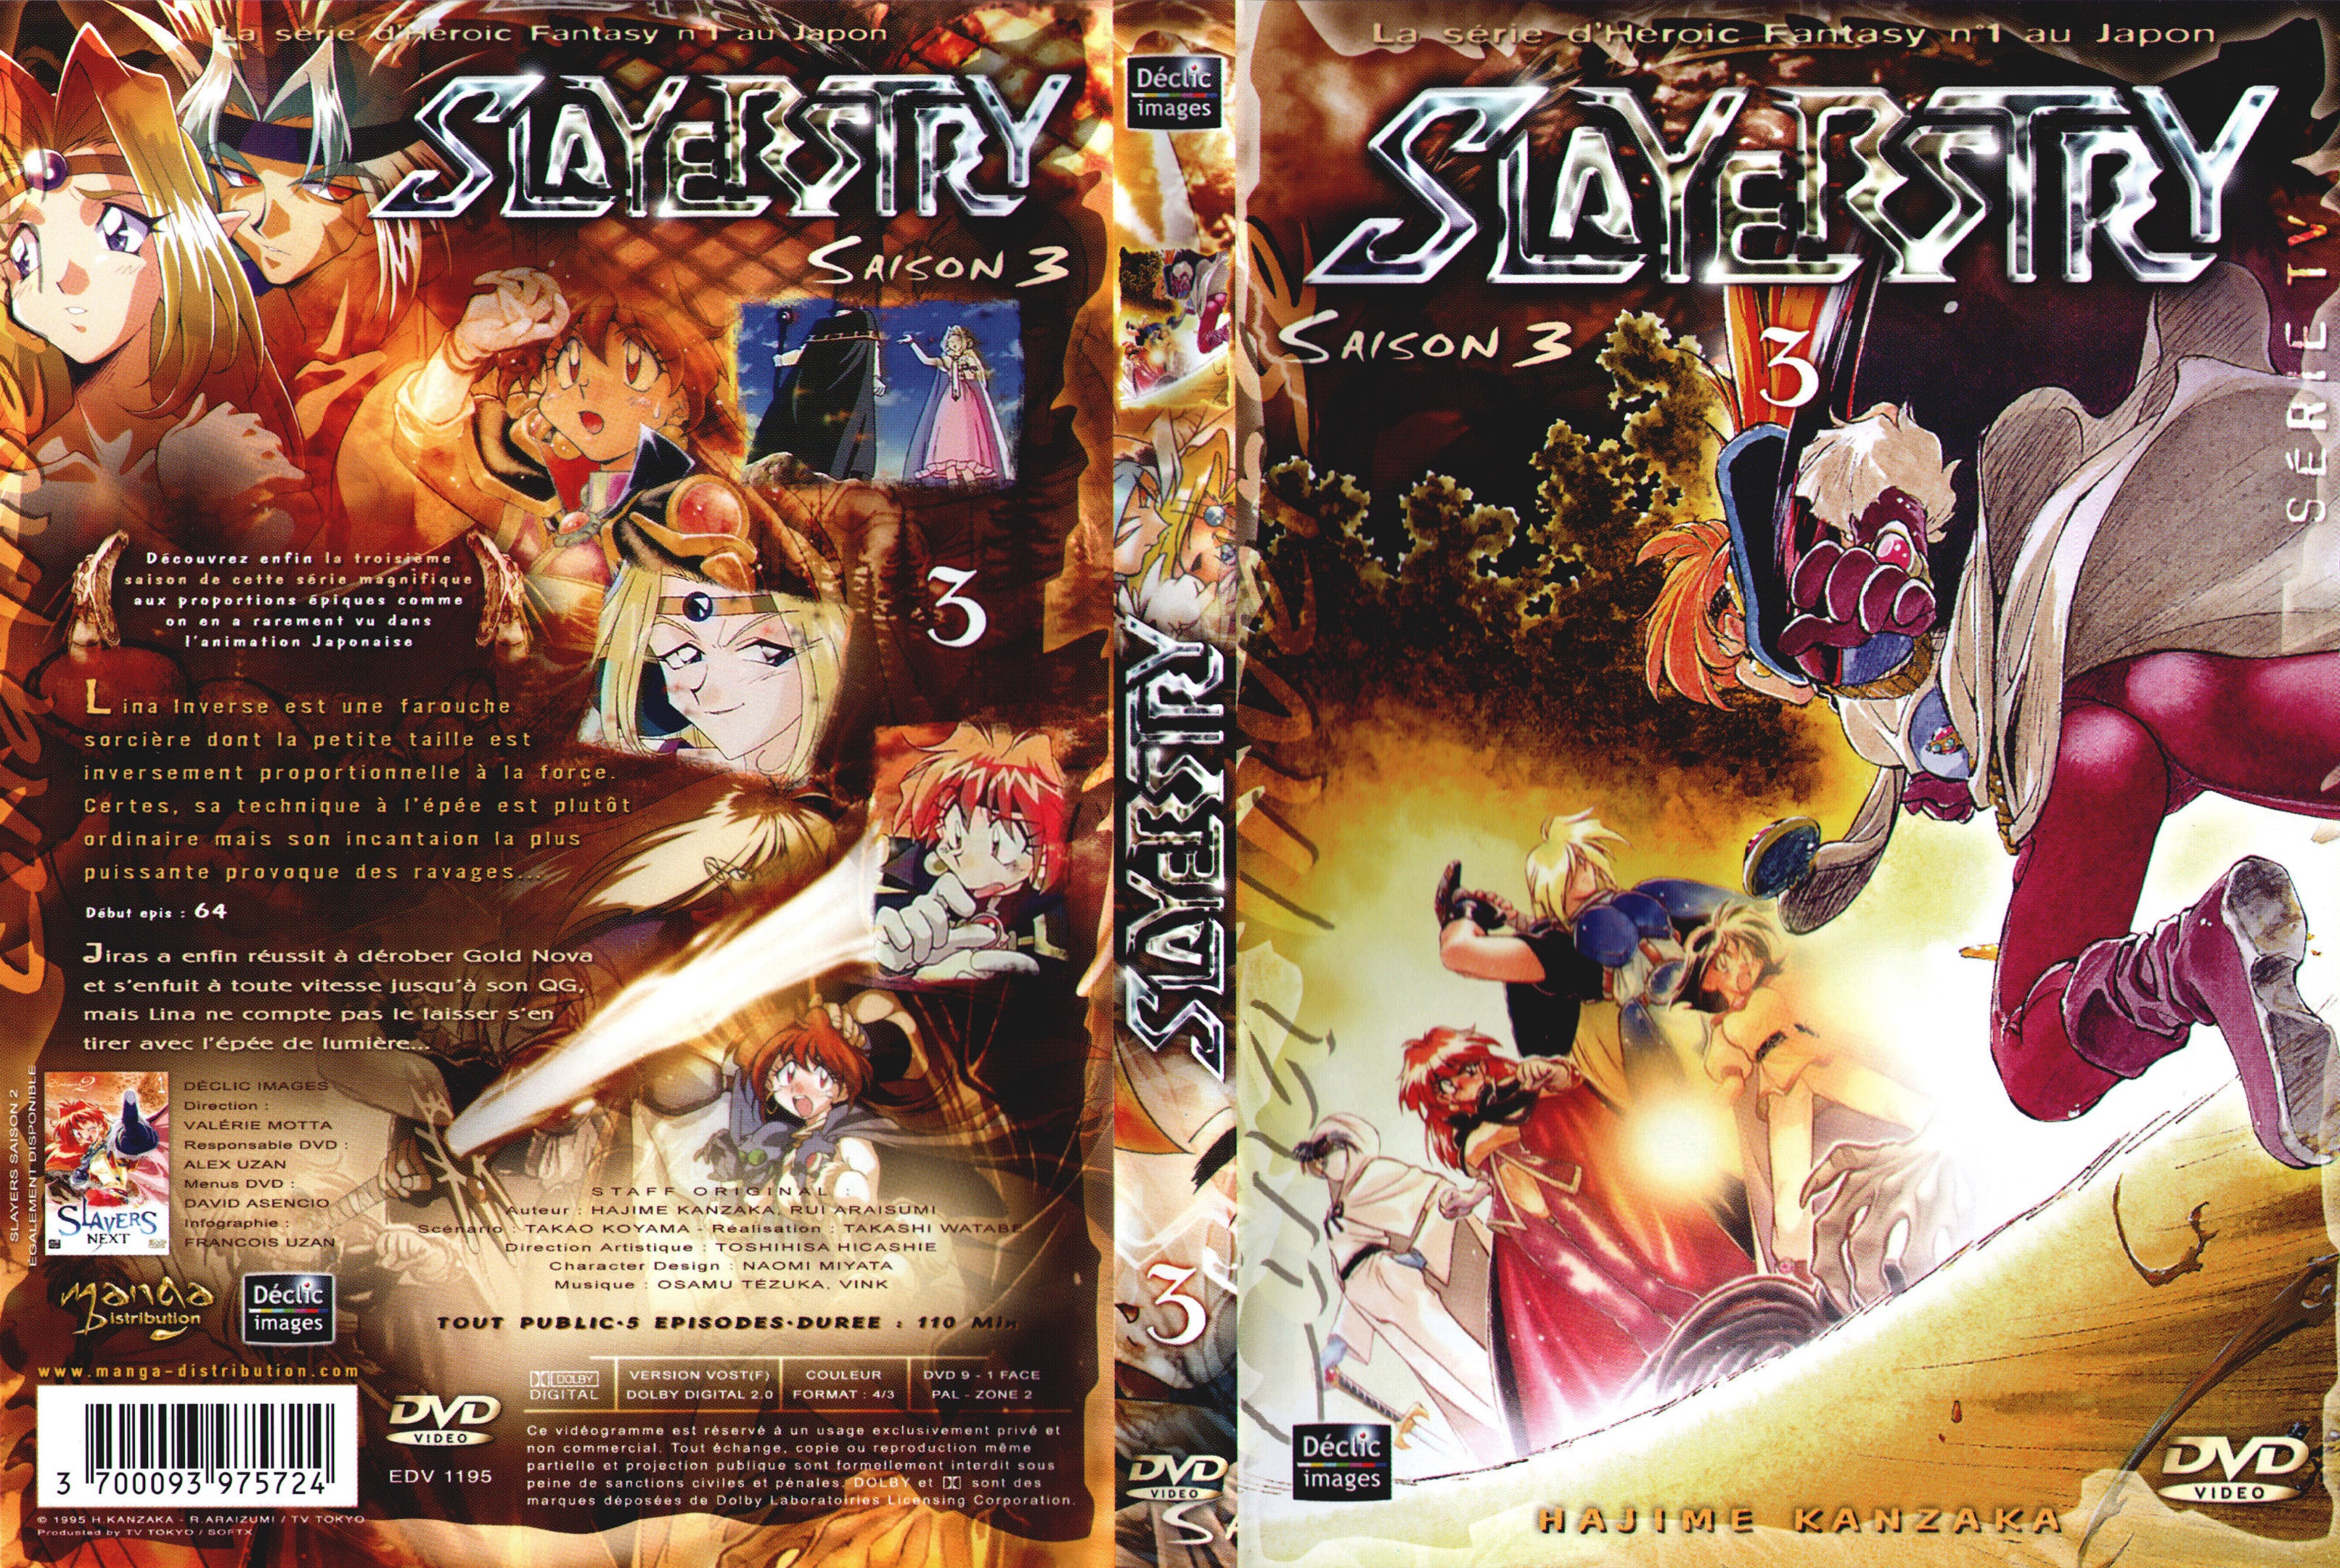 Jaquette DVD Slayers saison 3 DVD 3